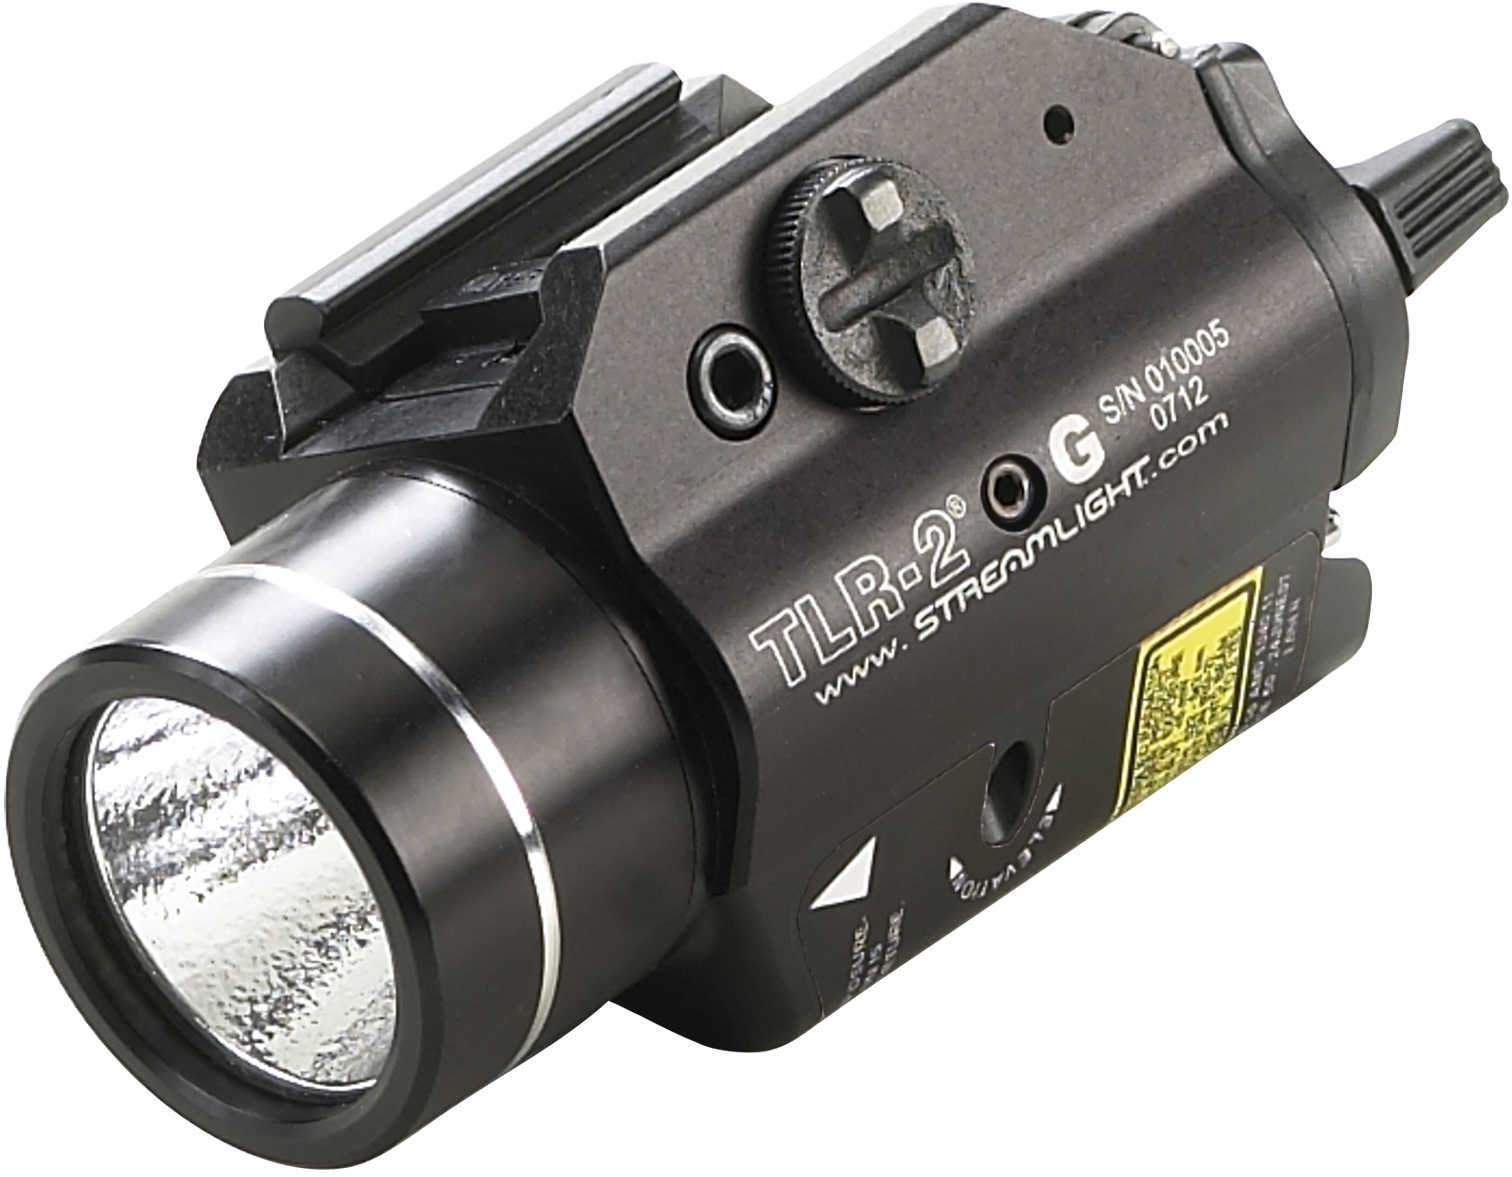 Stl 69250 TLR2G WeaponLight/Grn Laser 200 Lumens C4 Led